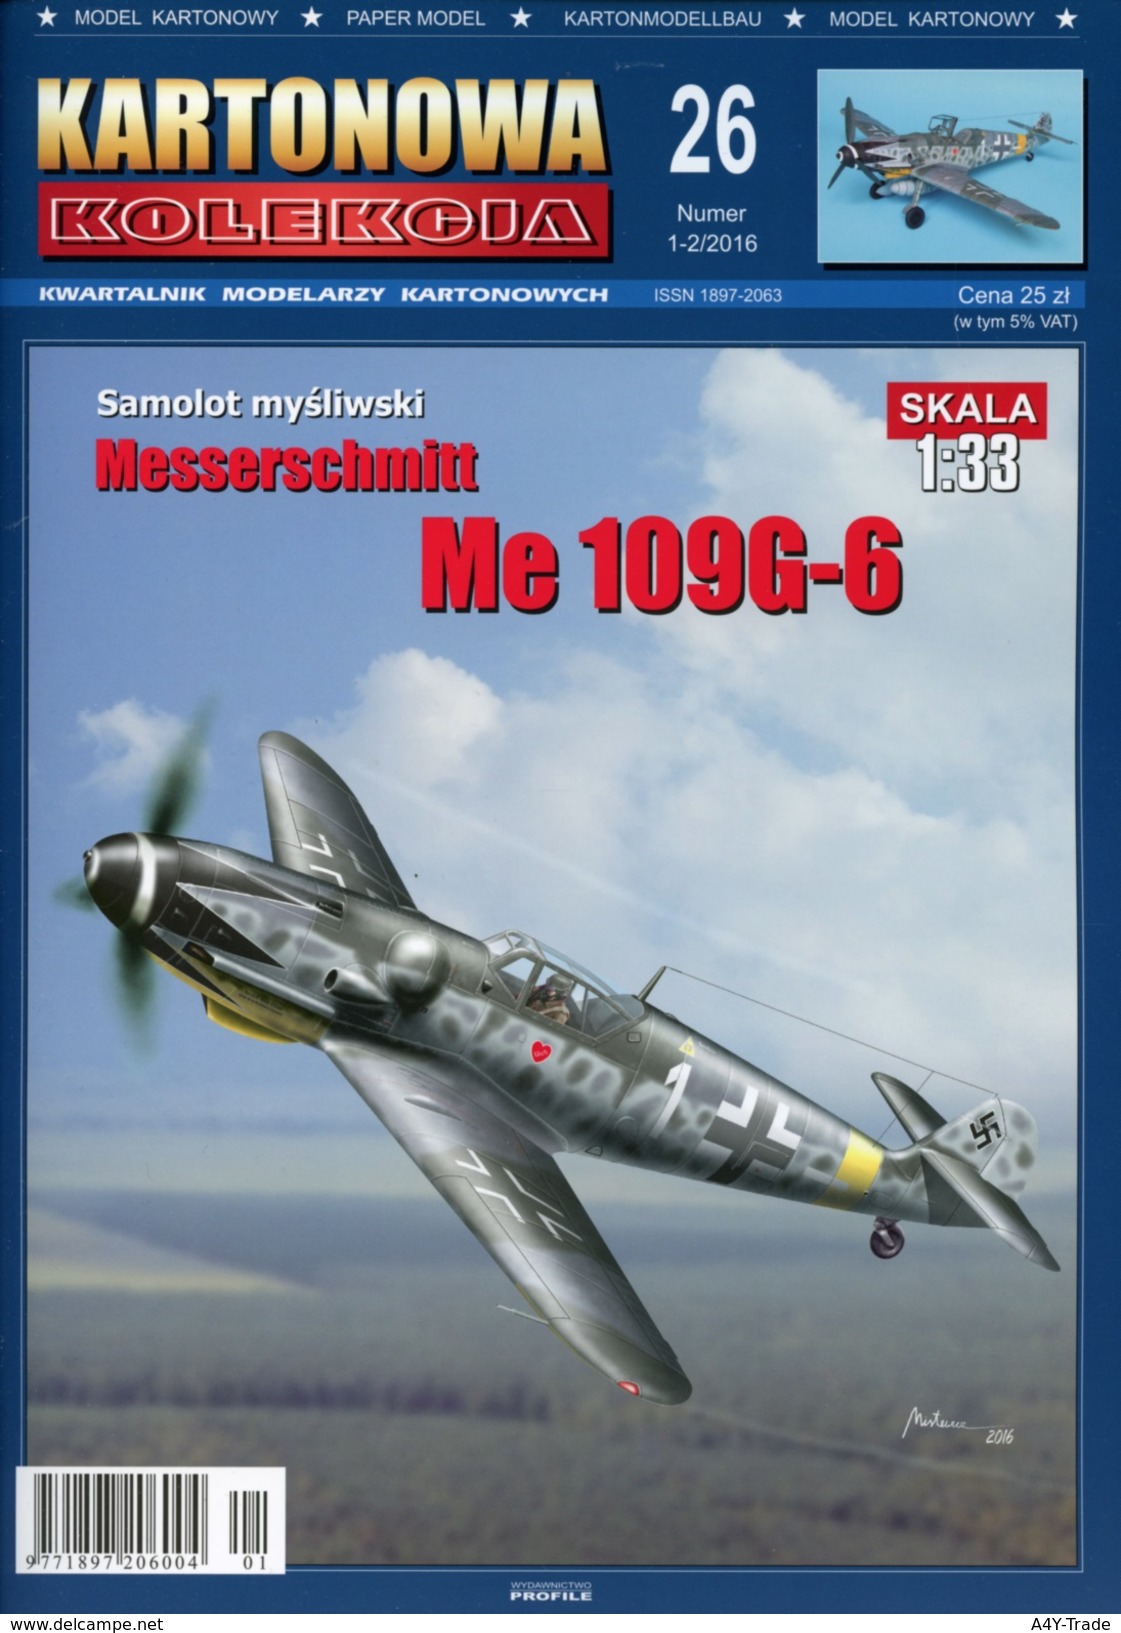 German WWII Fighter Messerschmitt Me 109G-6 - Paper Card Model Scale 1/33 # Kartonowa Kolekcja No 26 - Paper Models / Lasercut